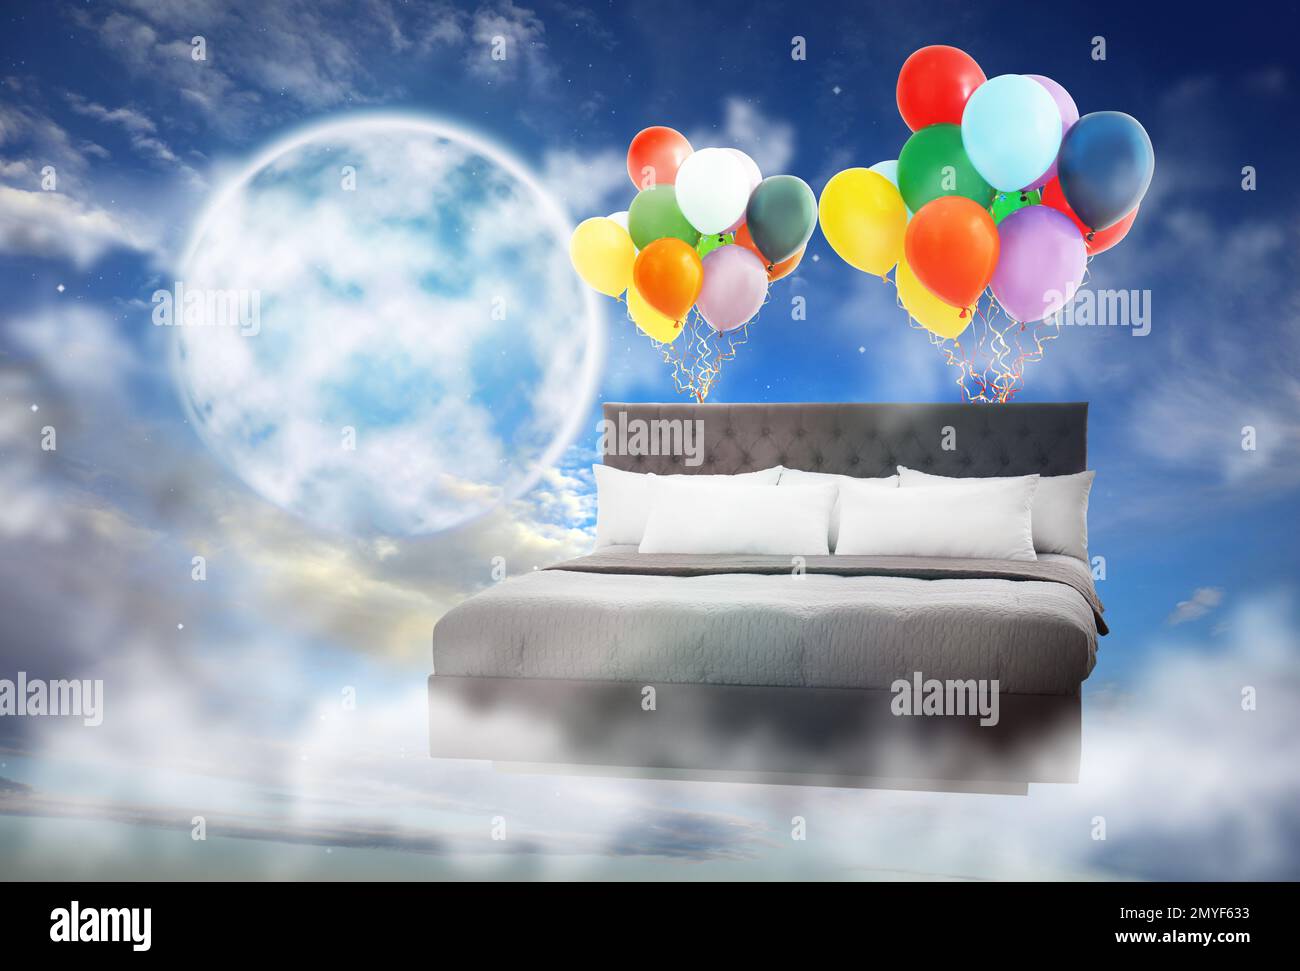 Sogni dolci. Letto con aerostati luminosi vicino alla luna piena in cielo nuvoloso Foto Stock